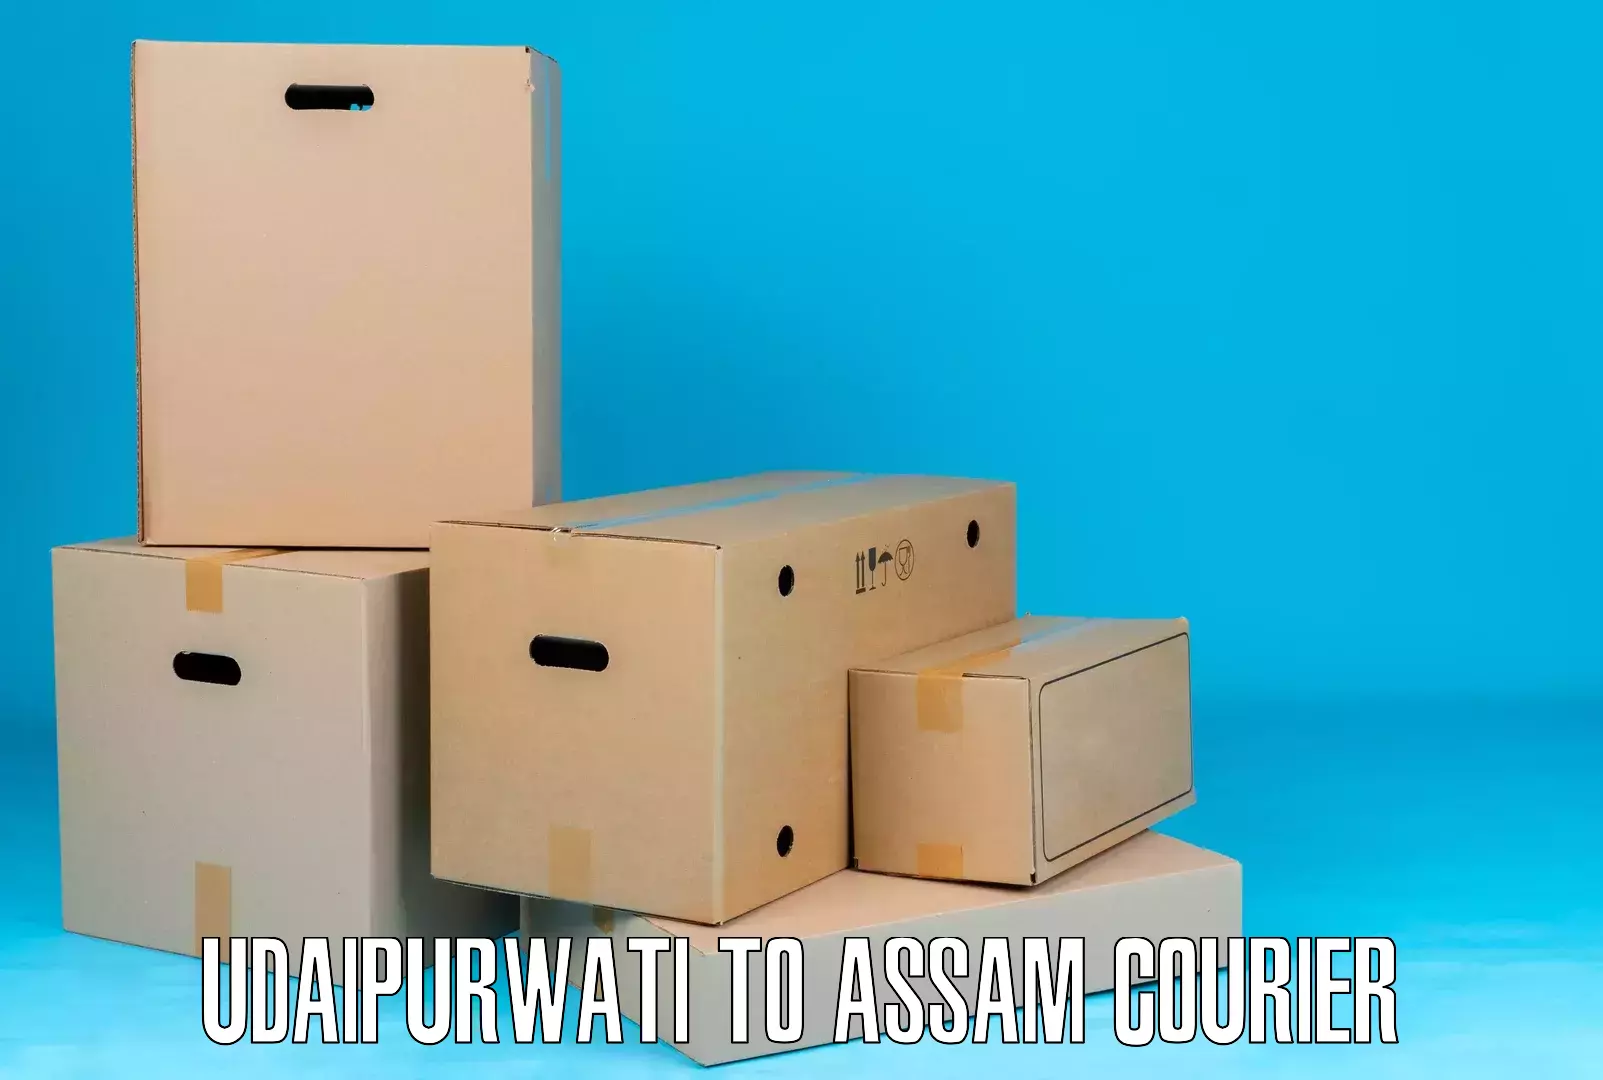 Modern parcel services Udaipurwati to Assam